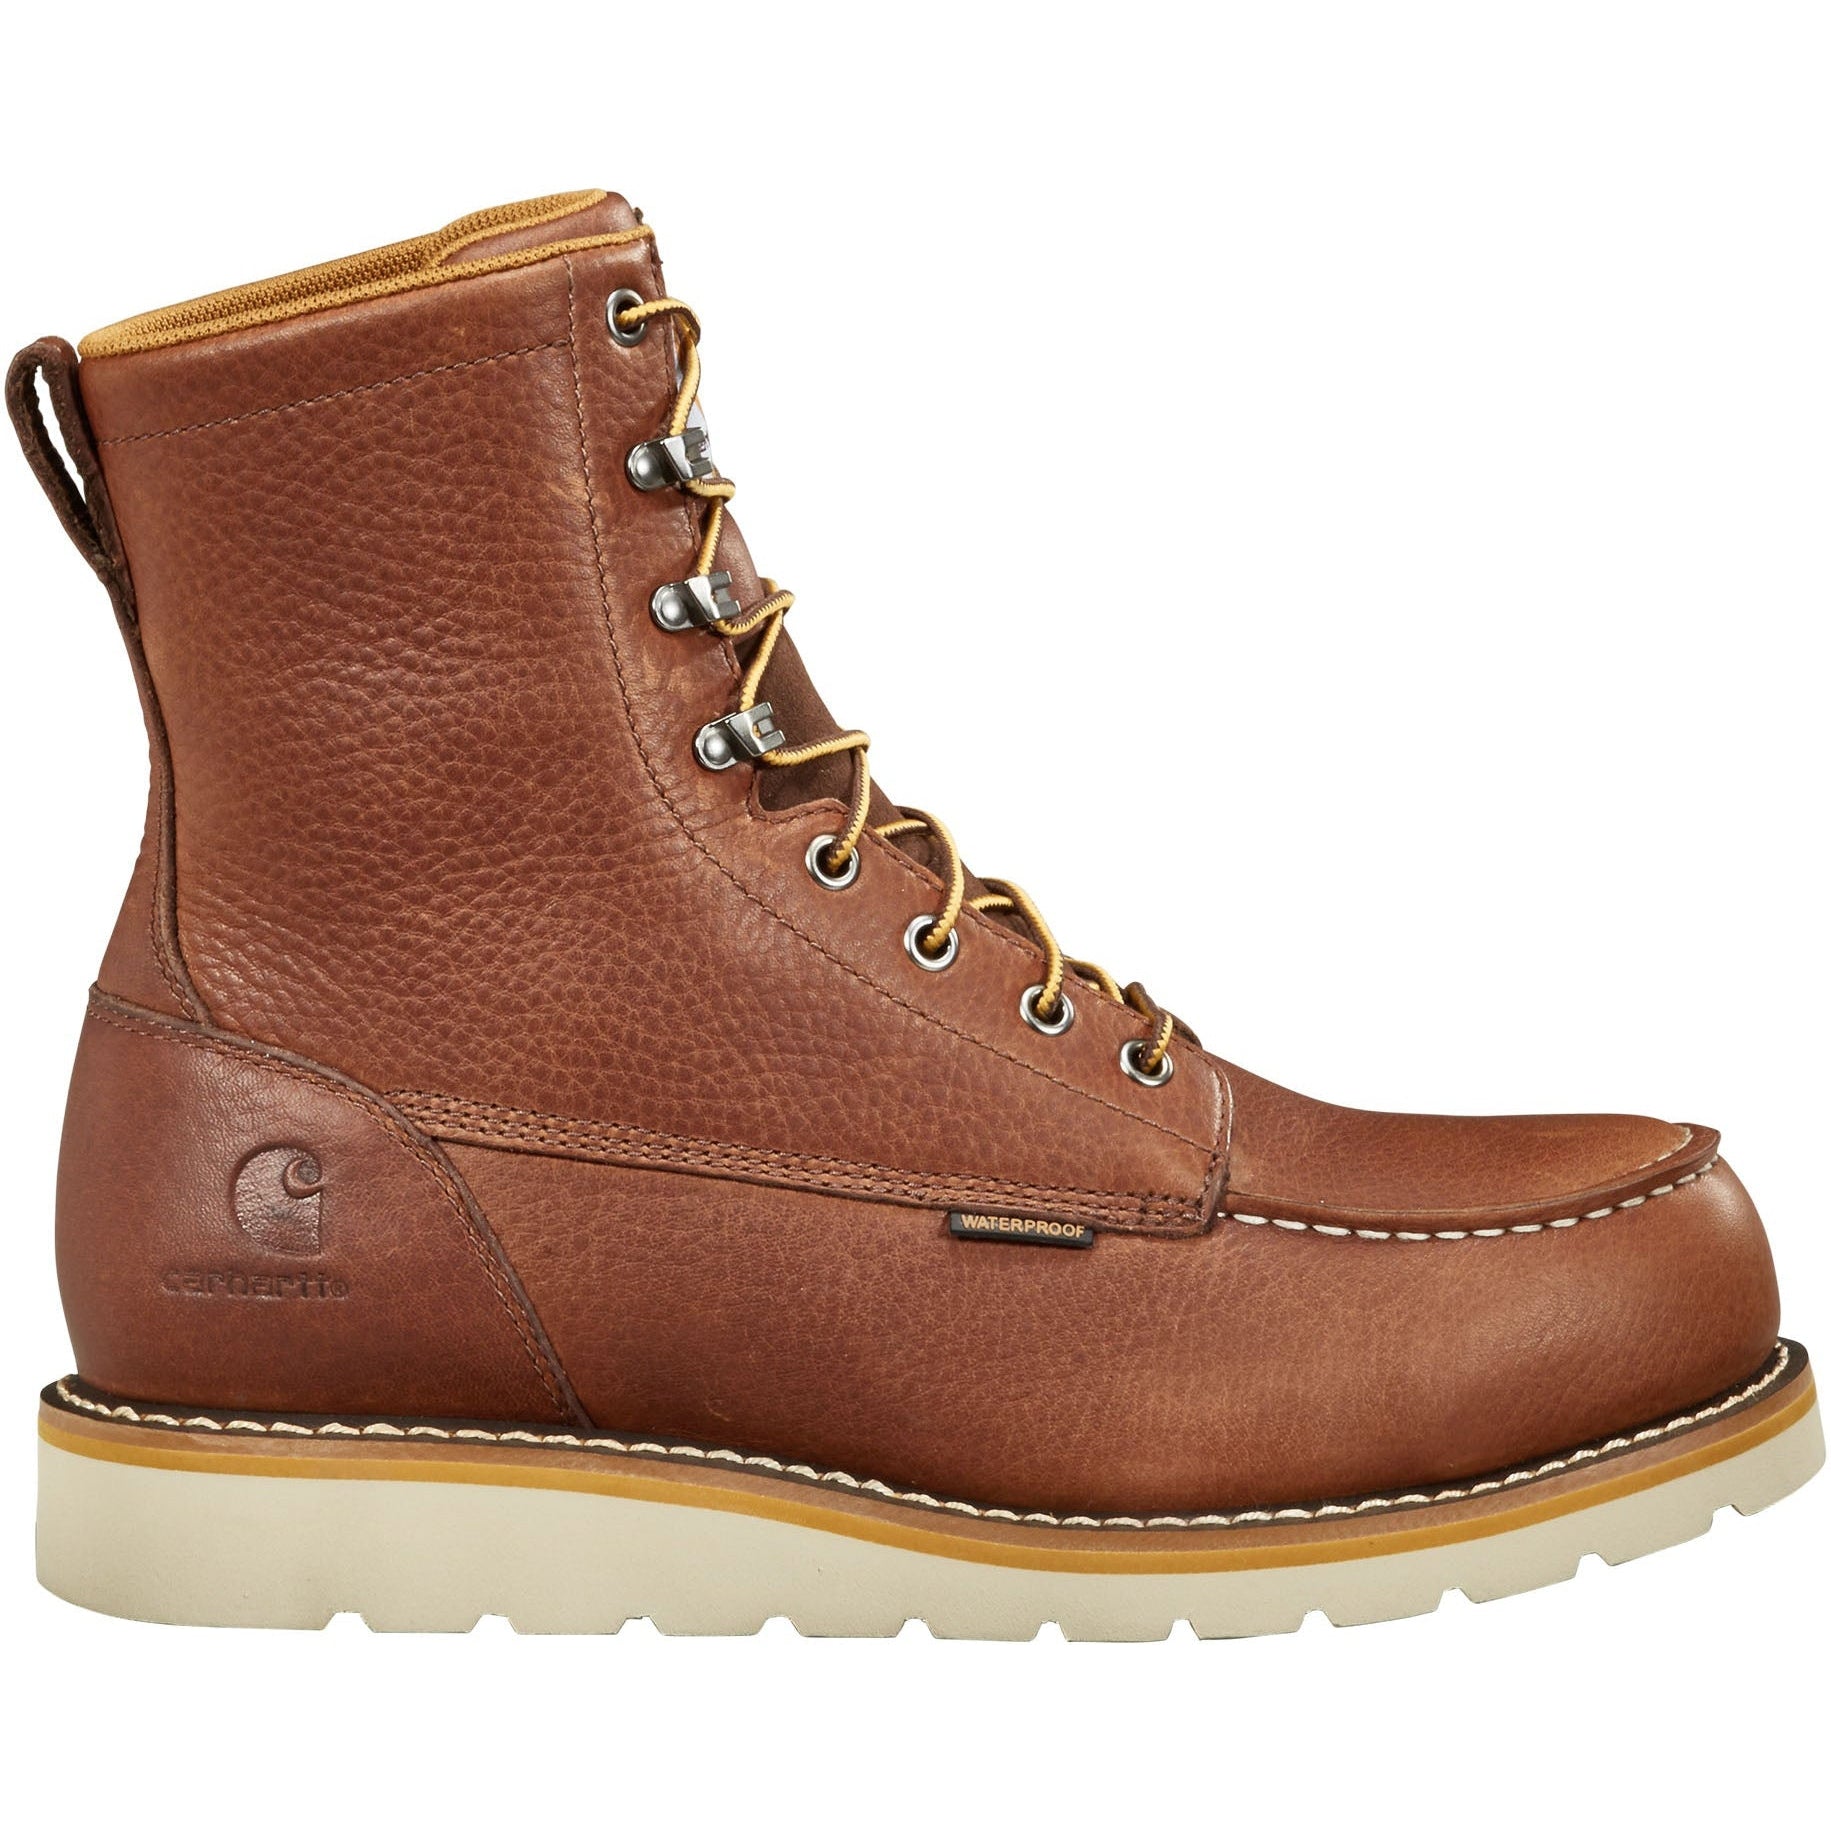 Carhartt Men's 8" Waterproof Steel Toe Wedge Work Boot - Redwood - FW8275-M 8 / Medium / Brown - Overlook Boots